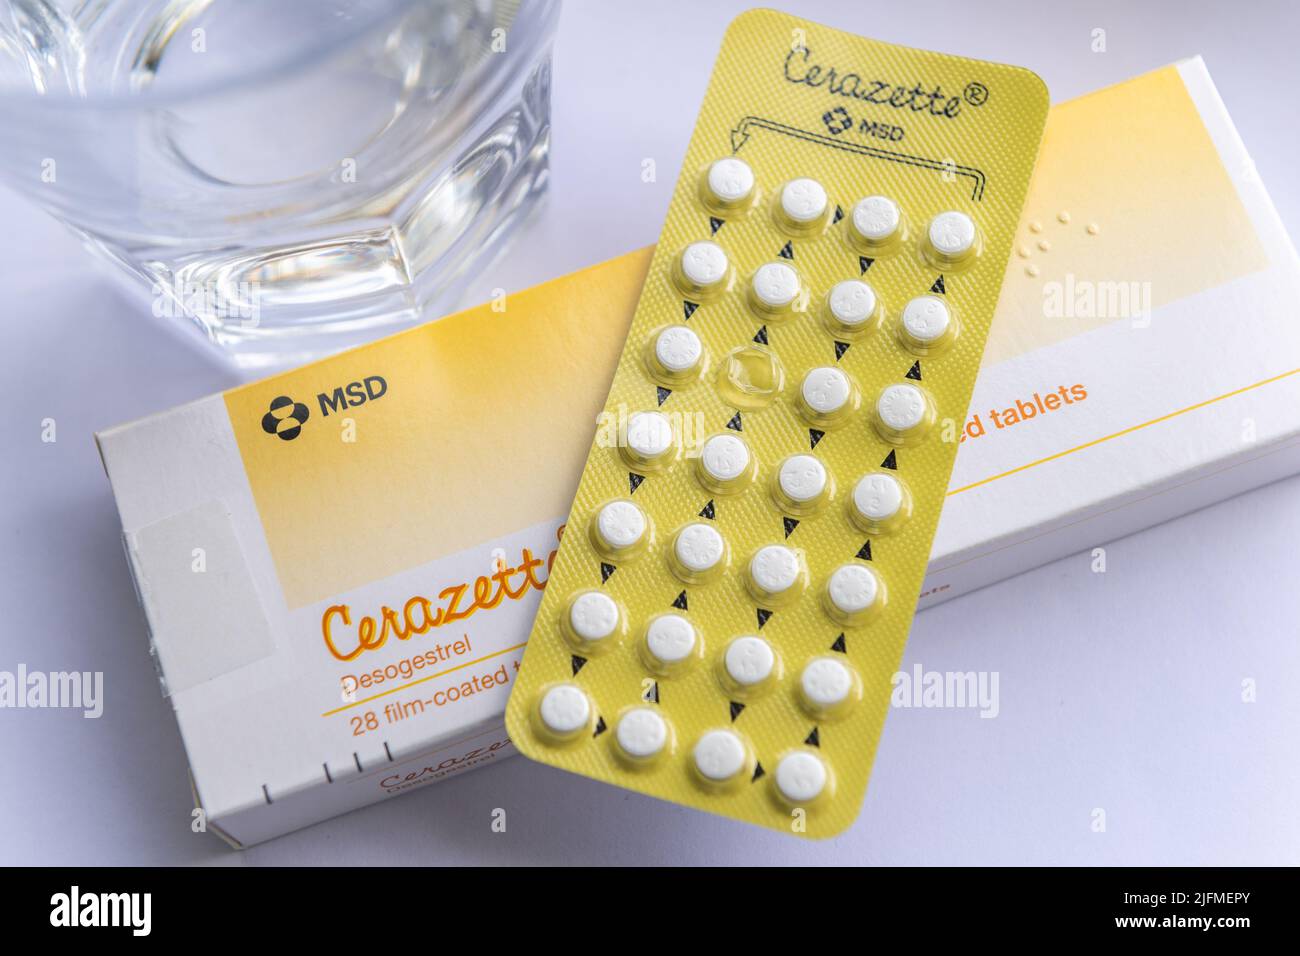 Cerazette Desogestrel boîte de comprimé de contraception, blister et un verre d'eau. IL S'AGIT D'UNE IMAGE, PAS DU PRODUIT. Banque D'Images